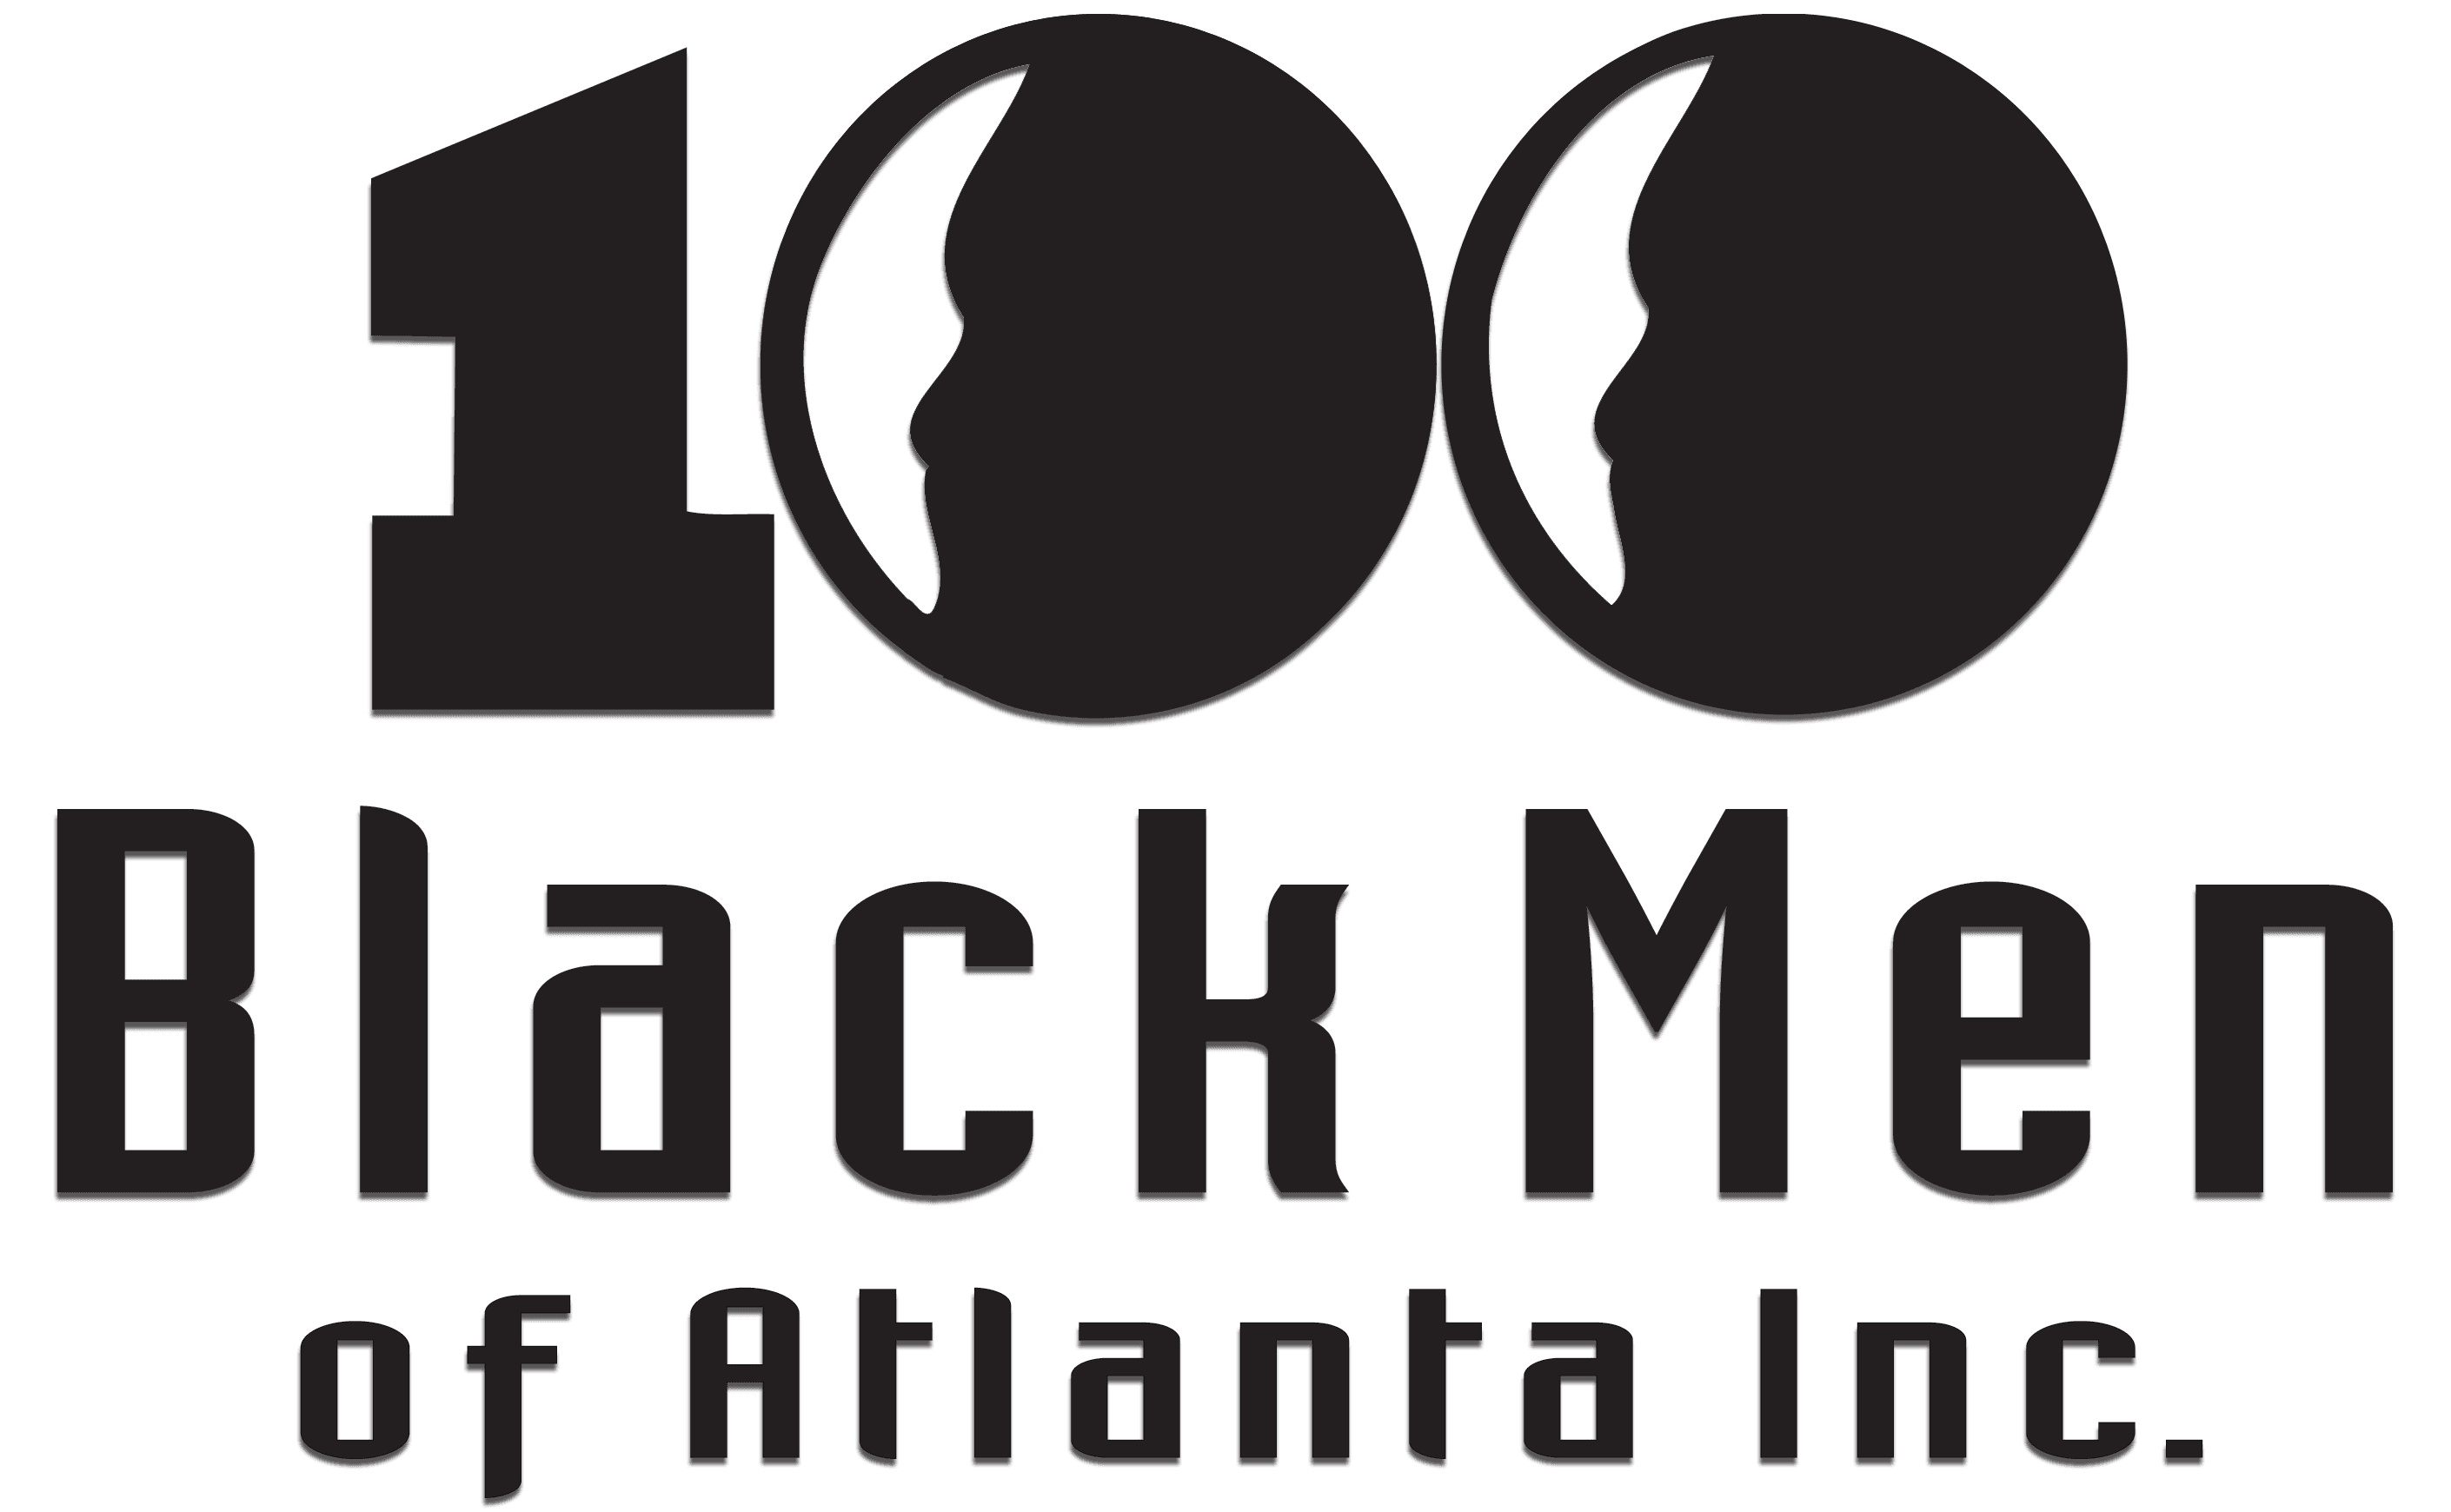 100 Black Men of Atlanta’s Honors Gala to Laud Leaders, Raise Funds for Mentorship